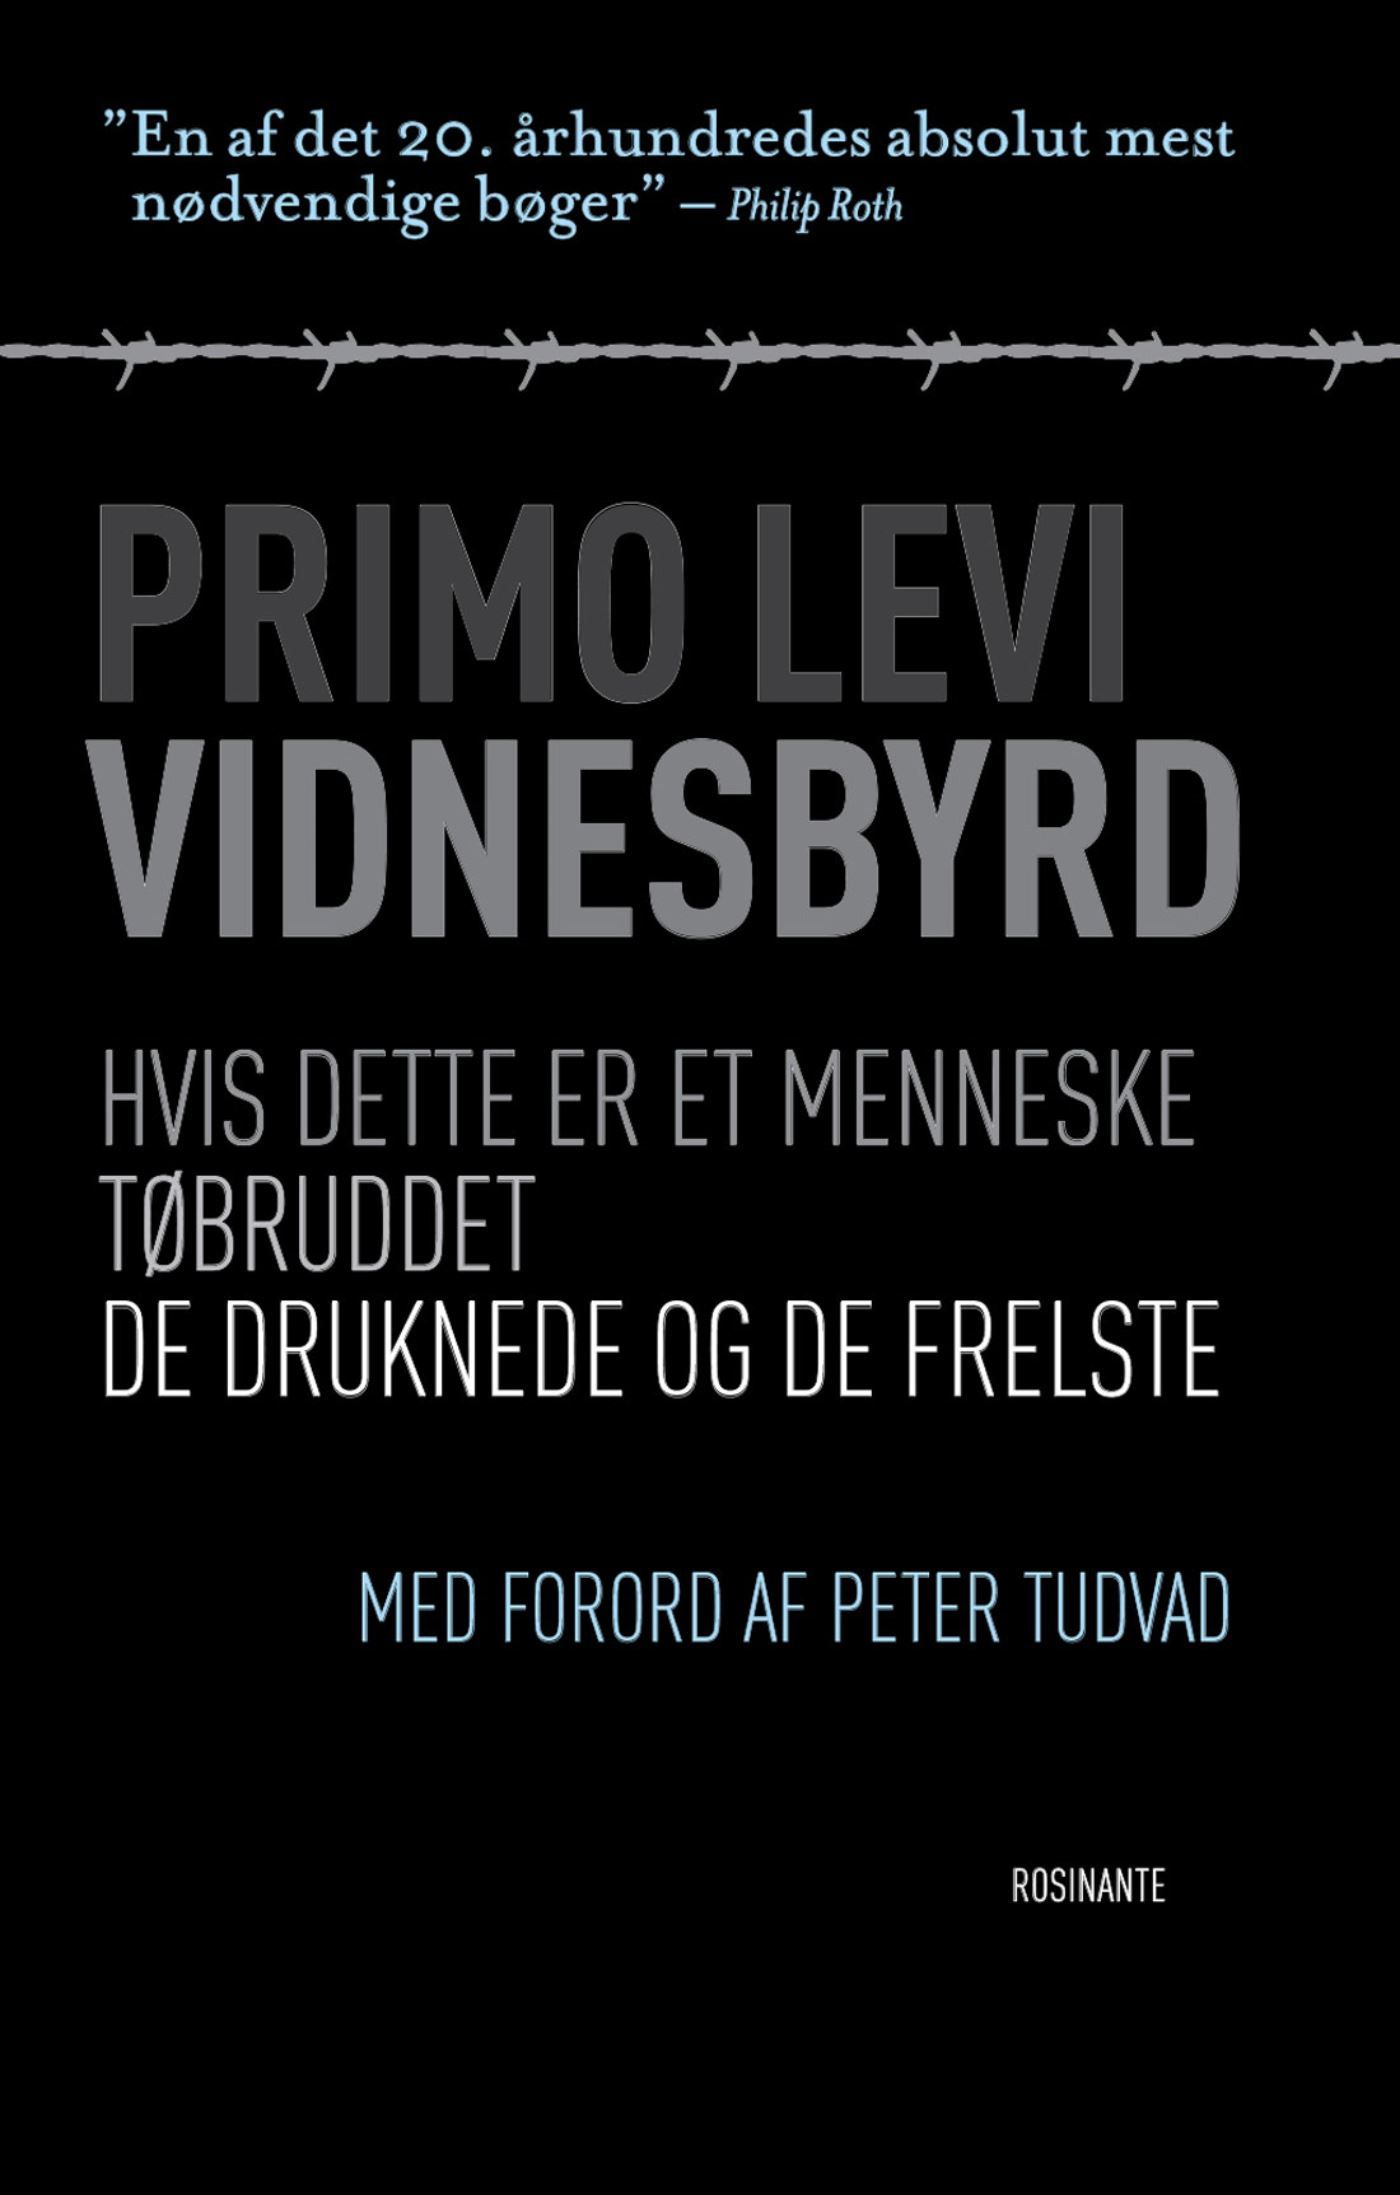 Vidnesbyrd, e-bog af Primo Levi